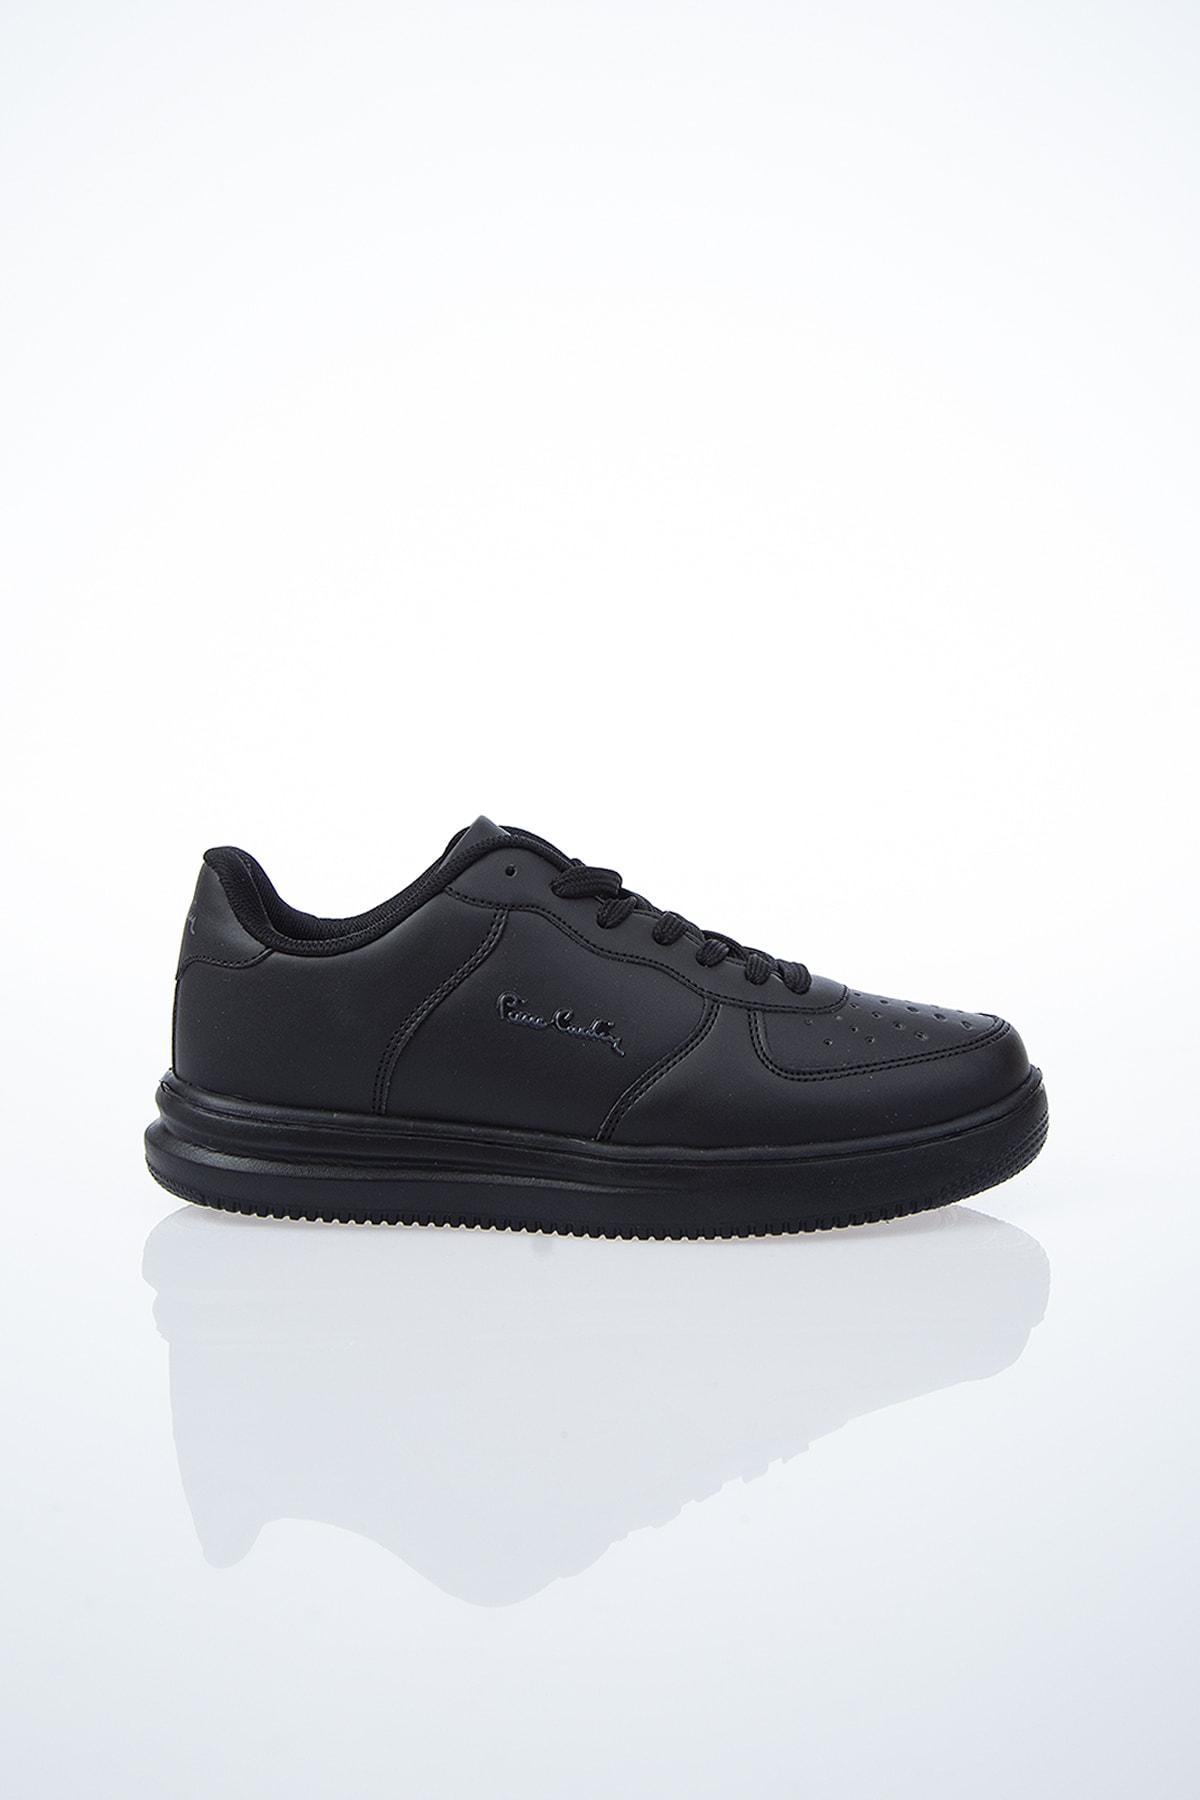 Pierre Cardin Kadın Günlük Spor Ayakkabı-Siyah PCS-10148